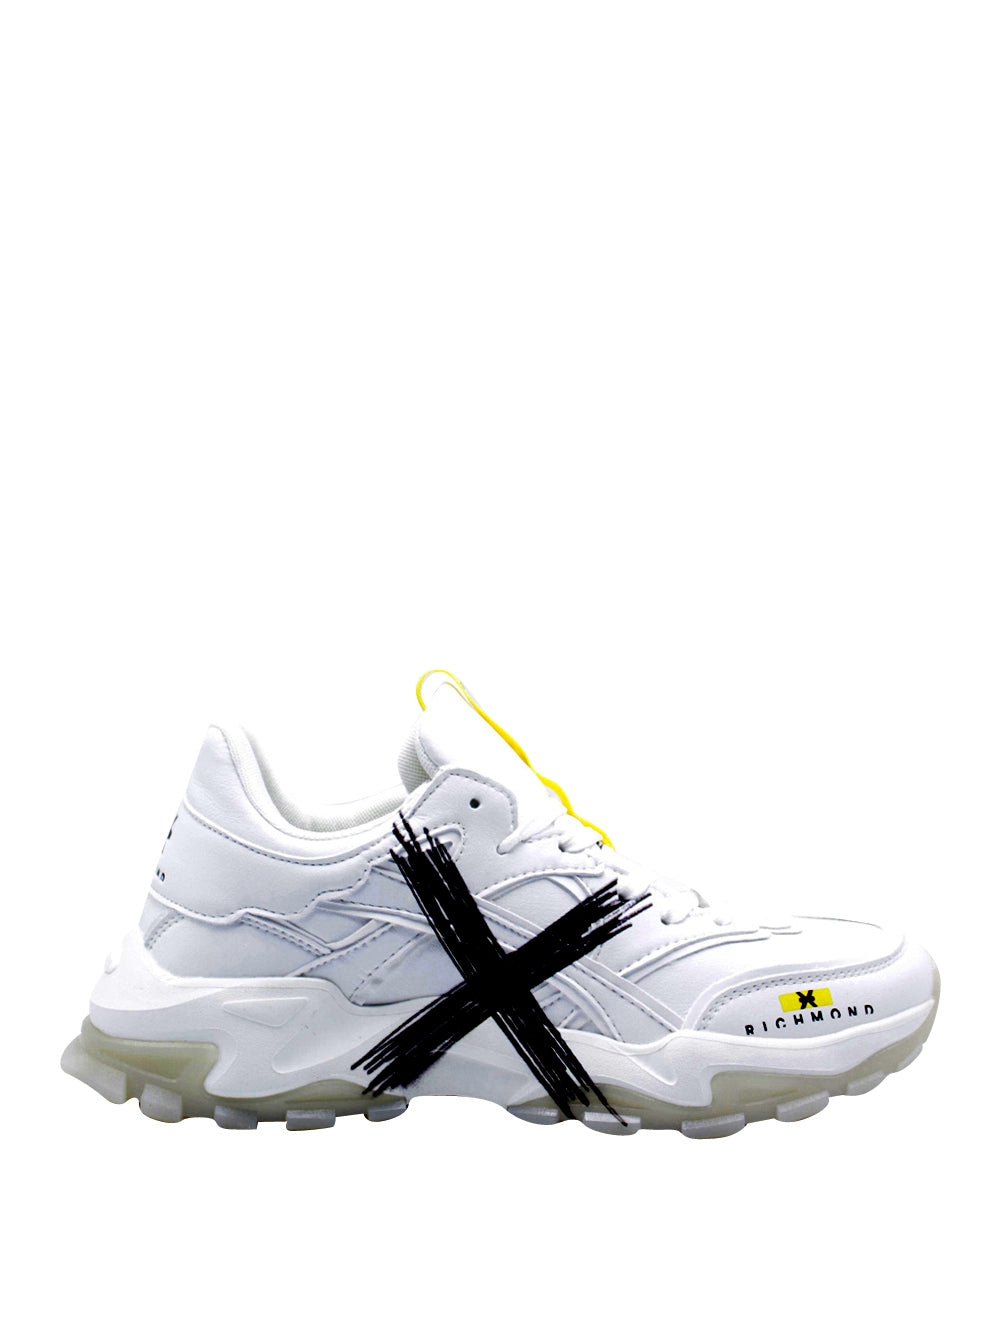 RICHMOND Sneakers Uomo - Bianco modello 2222